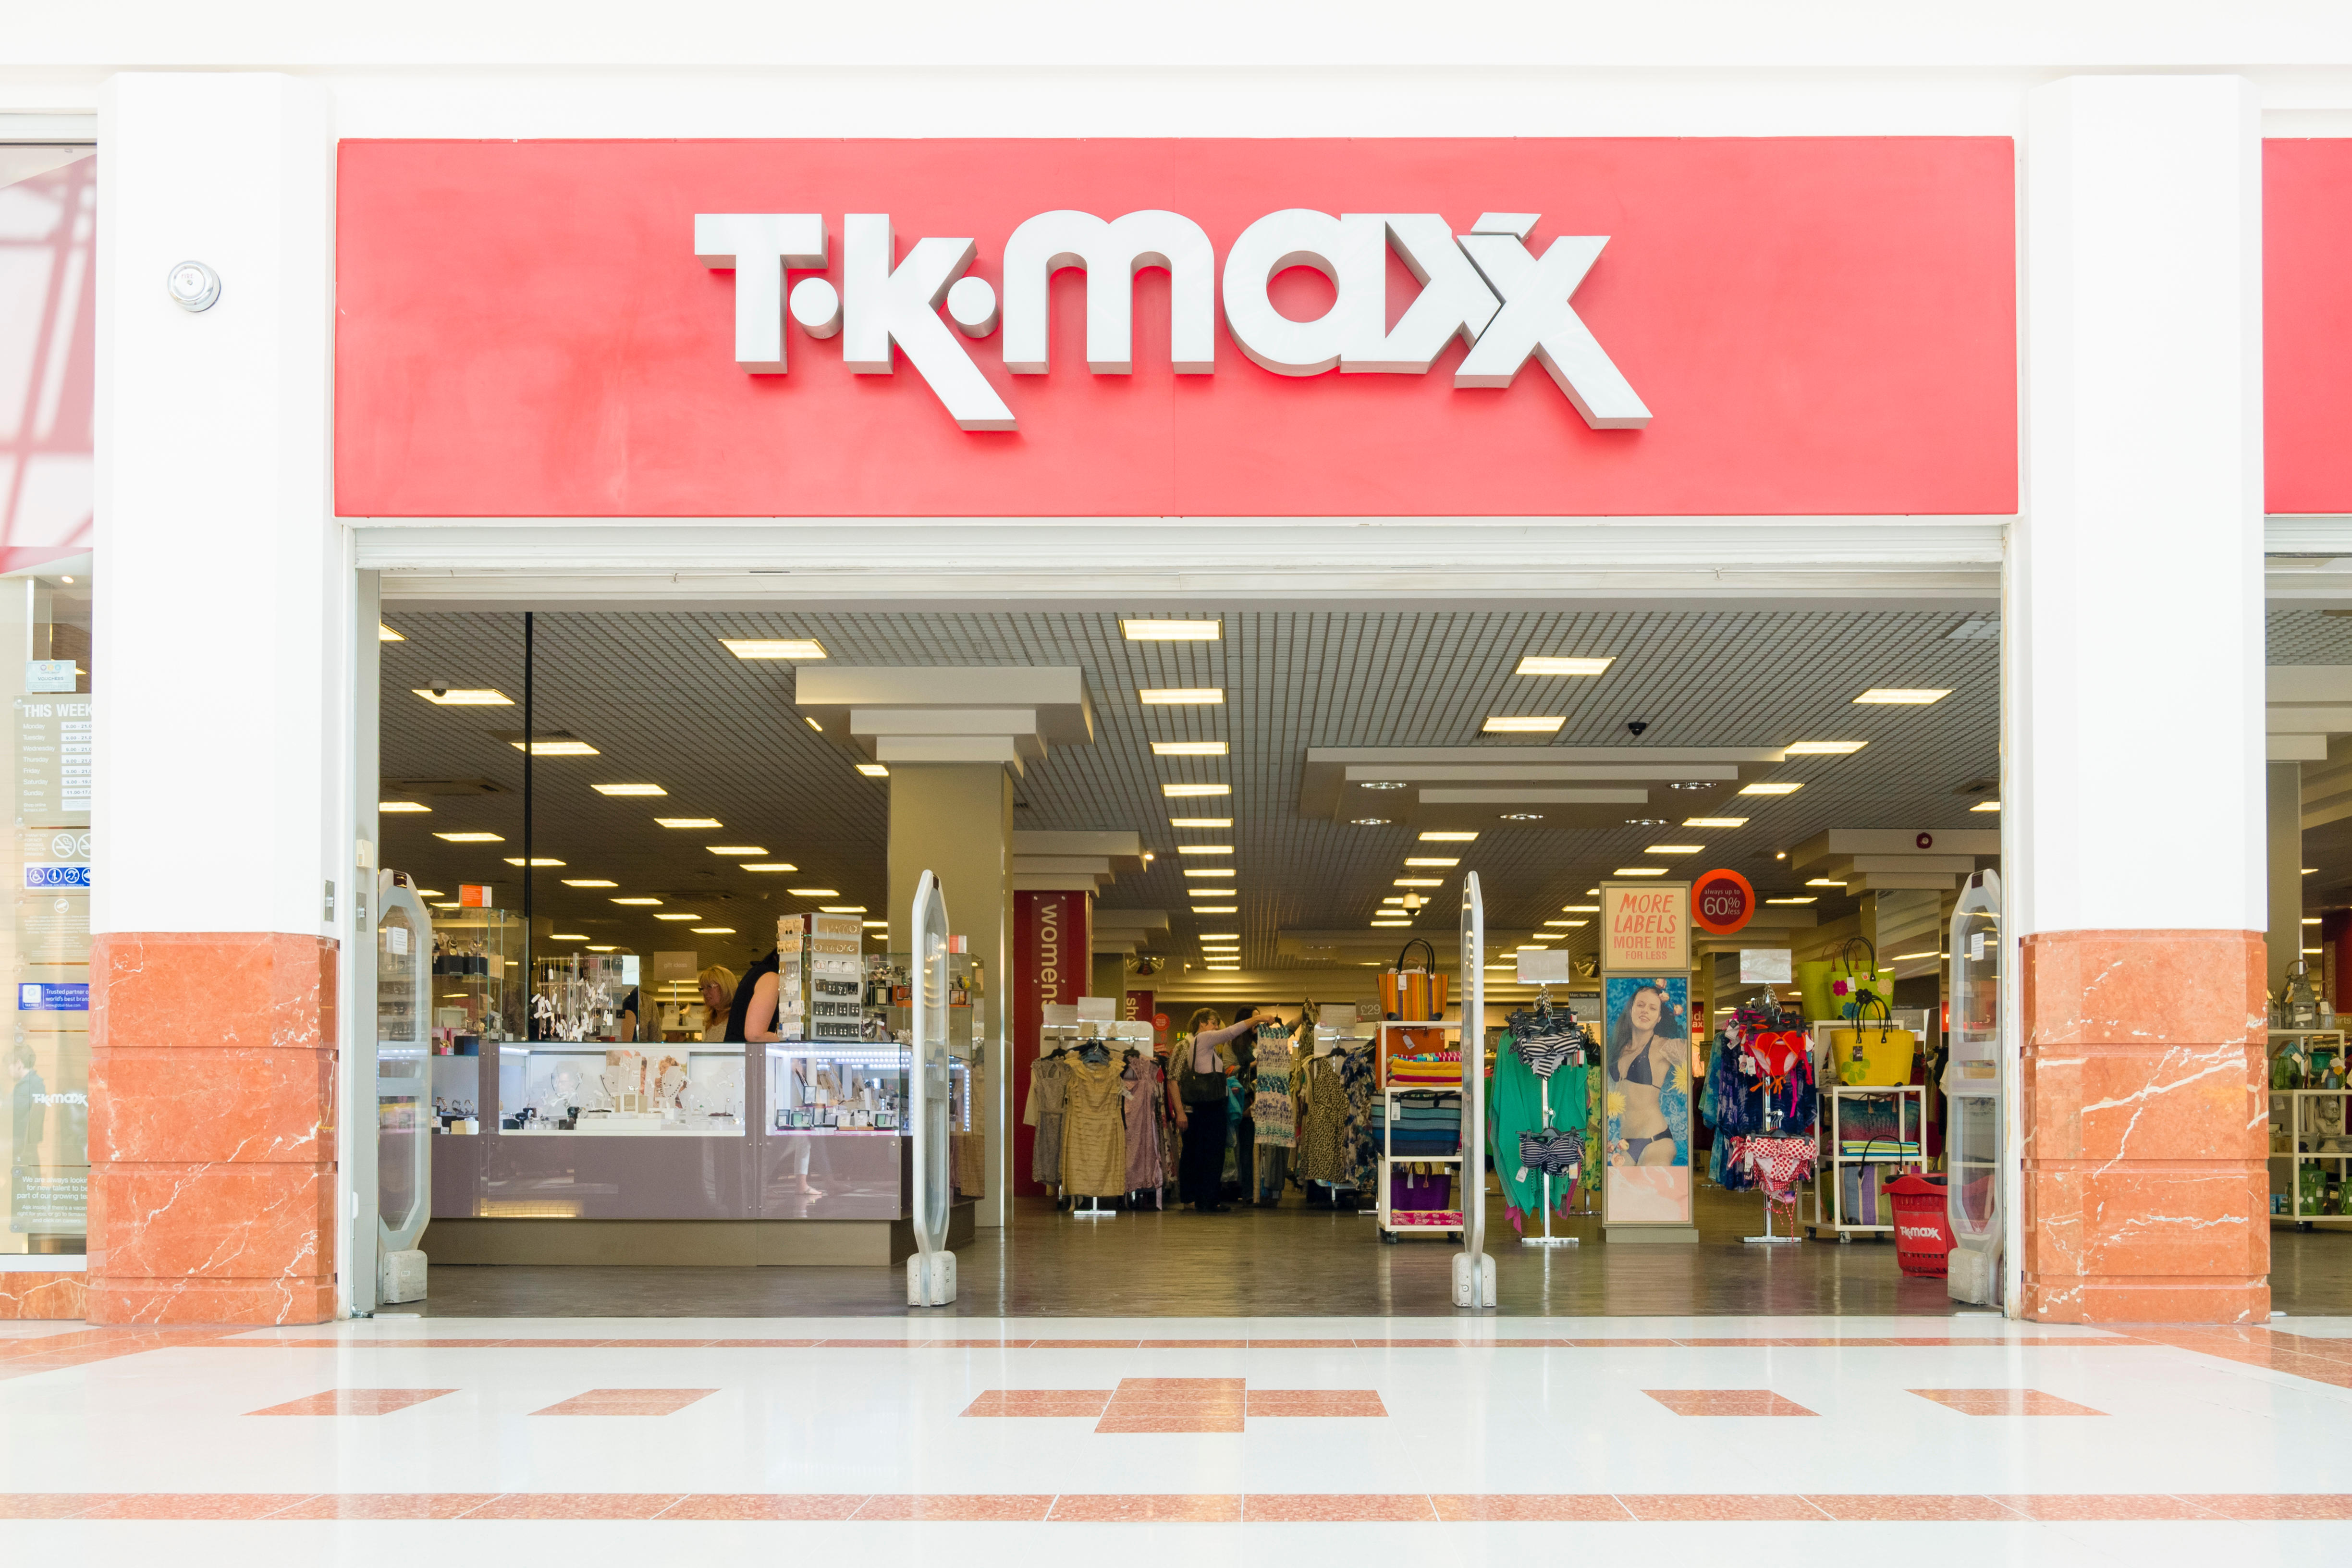 Tk Maxx has some great gucci bargains lately #tkmaxx #tkmaxxfinds #tkm